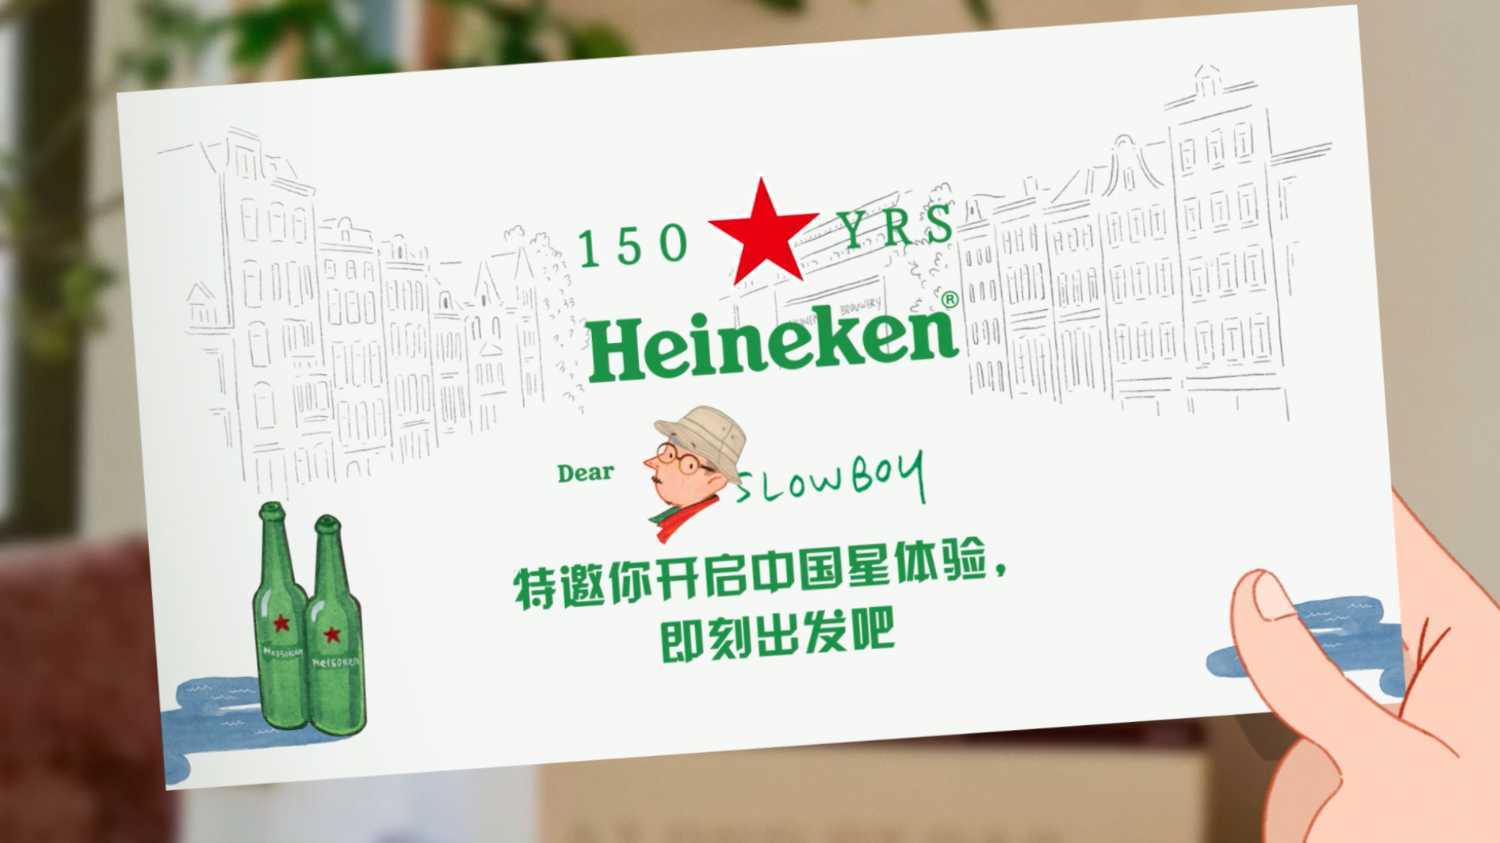 喜力Heineken 150周年庆典 预告动画